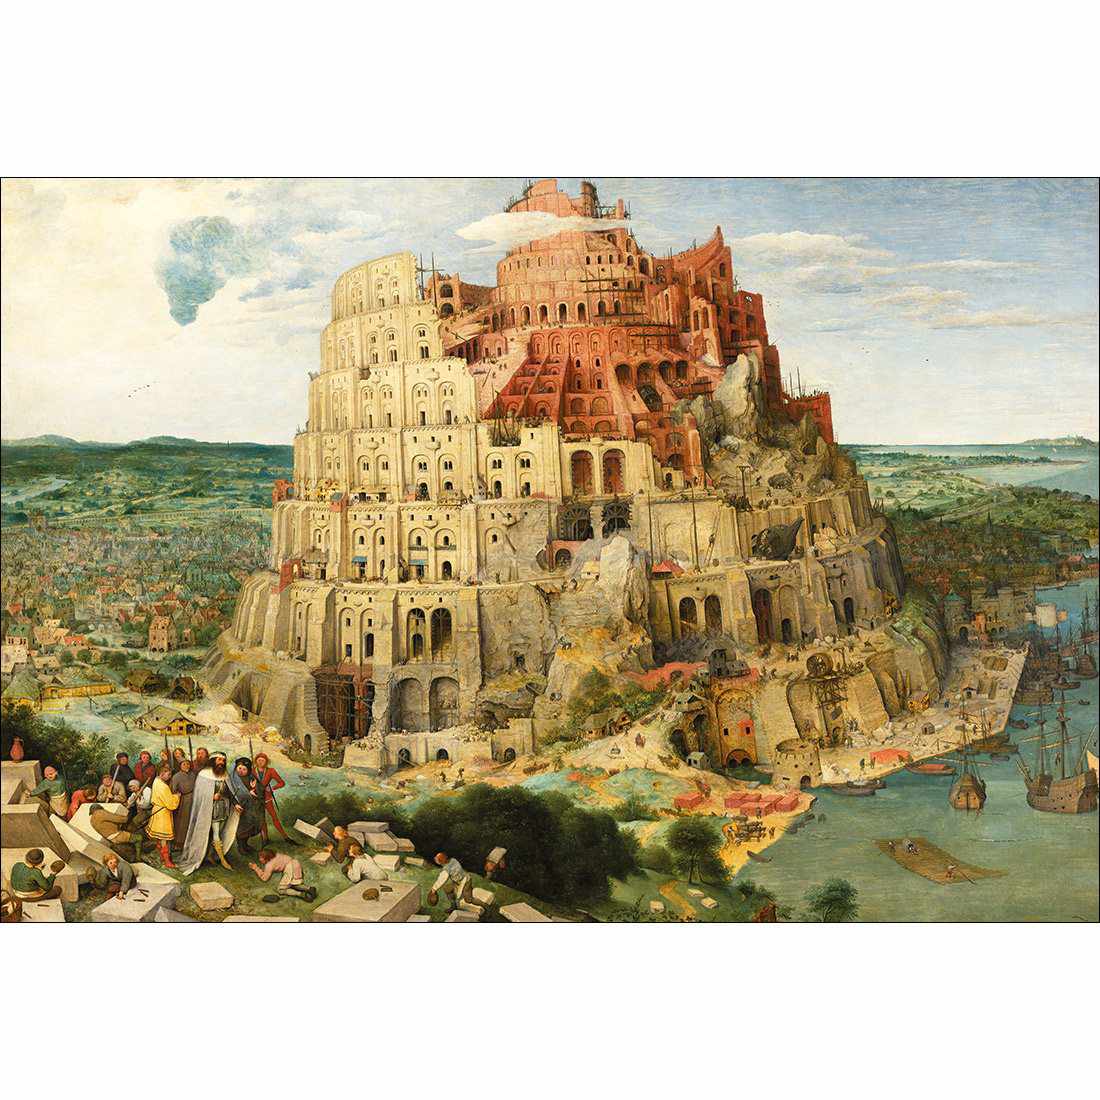 Tower Of Babel - Pieter Bruegel The Elder Canvas Art-Canvas-Wall Art Designs-45x30cm-Canvas - No Frame-Wall Art Designs